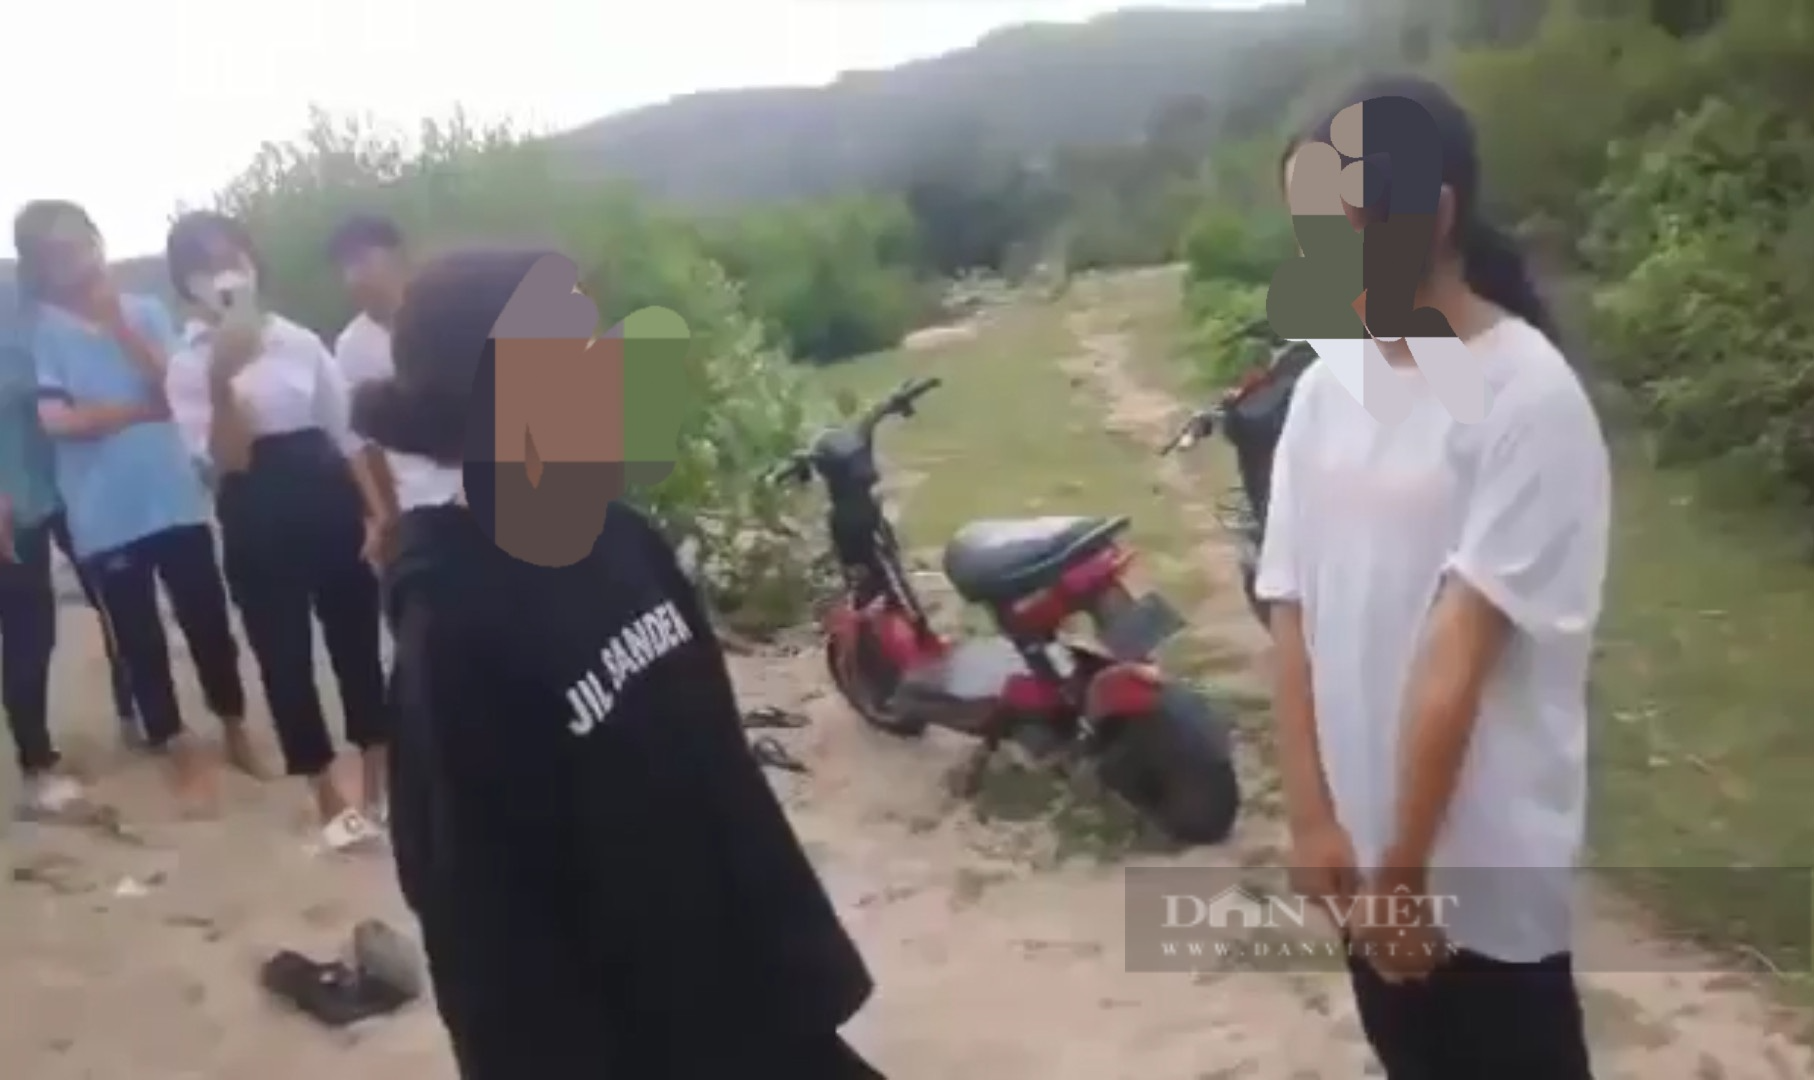 Xôn xao clip ghi lại cảnh nữ sinh lớp 6 bị hành hung dã man ở Ninh Thuận - Ảnh 2.